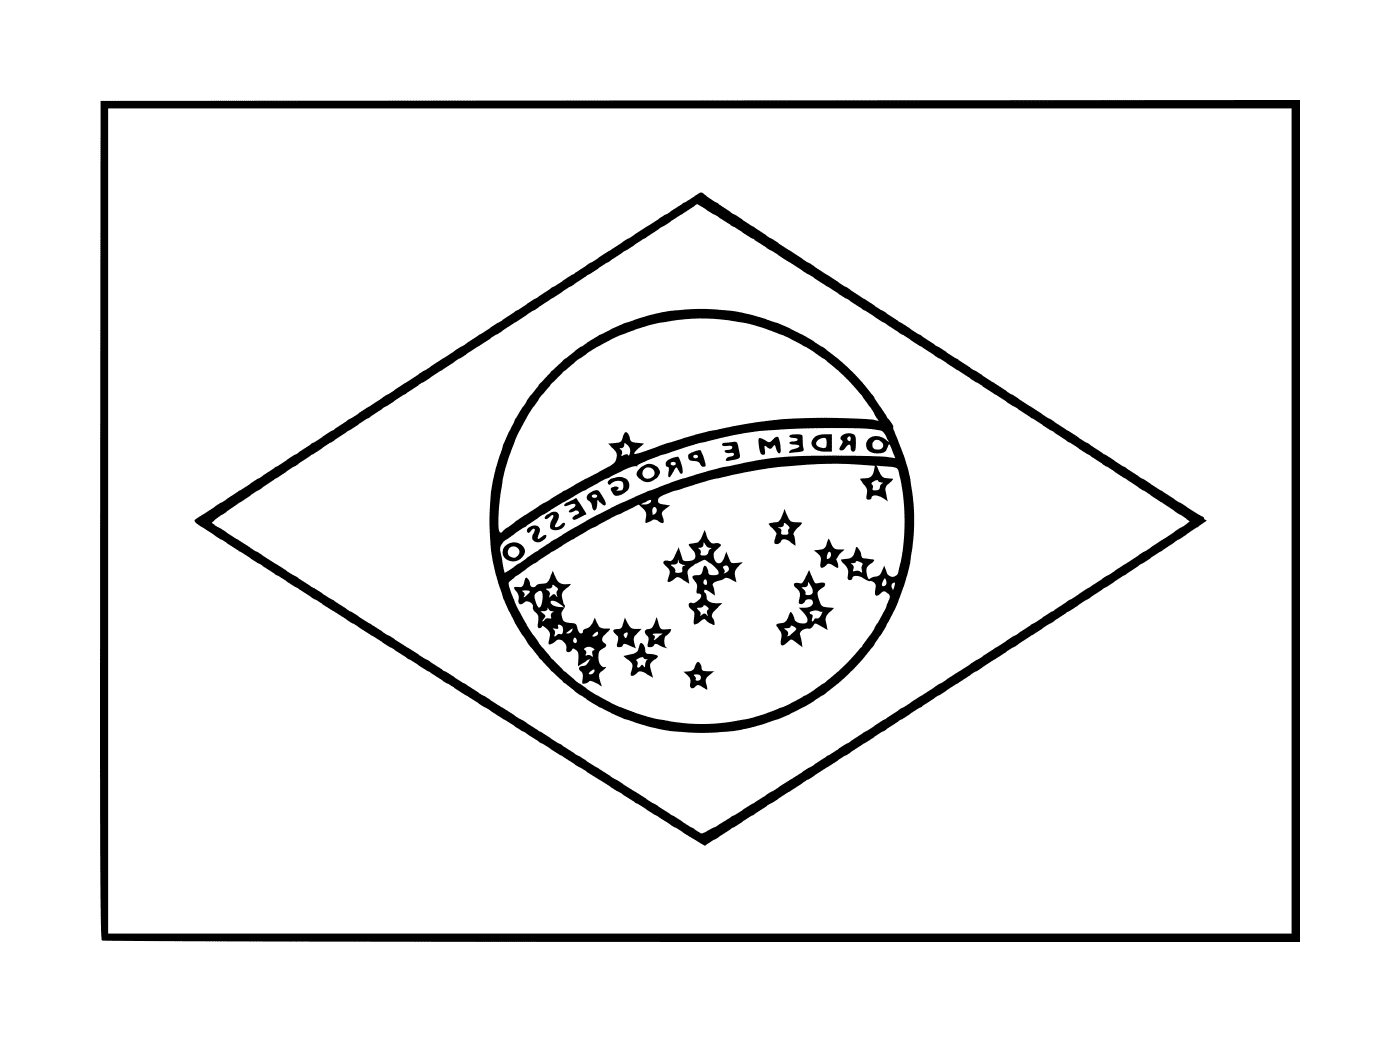  Bandeira do Brasil 